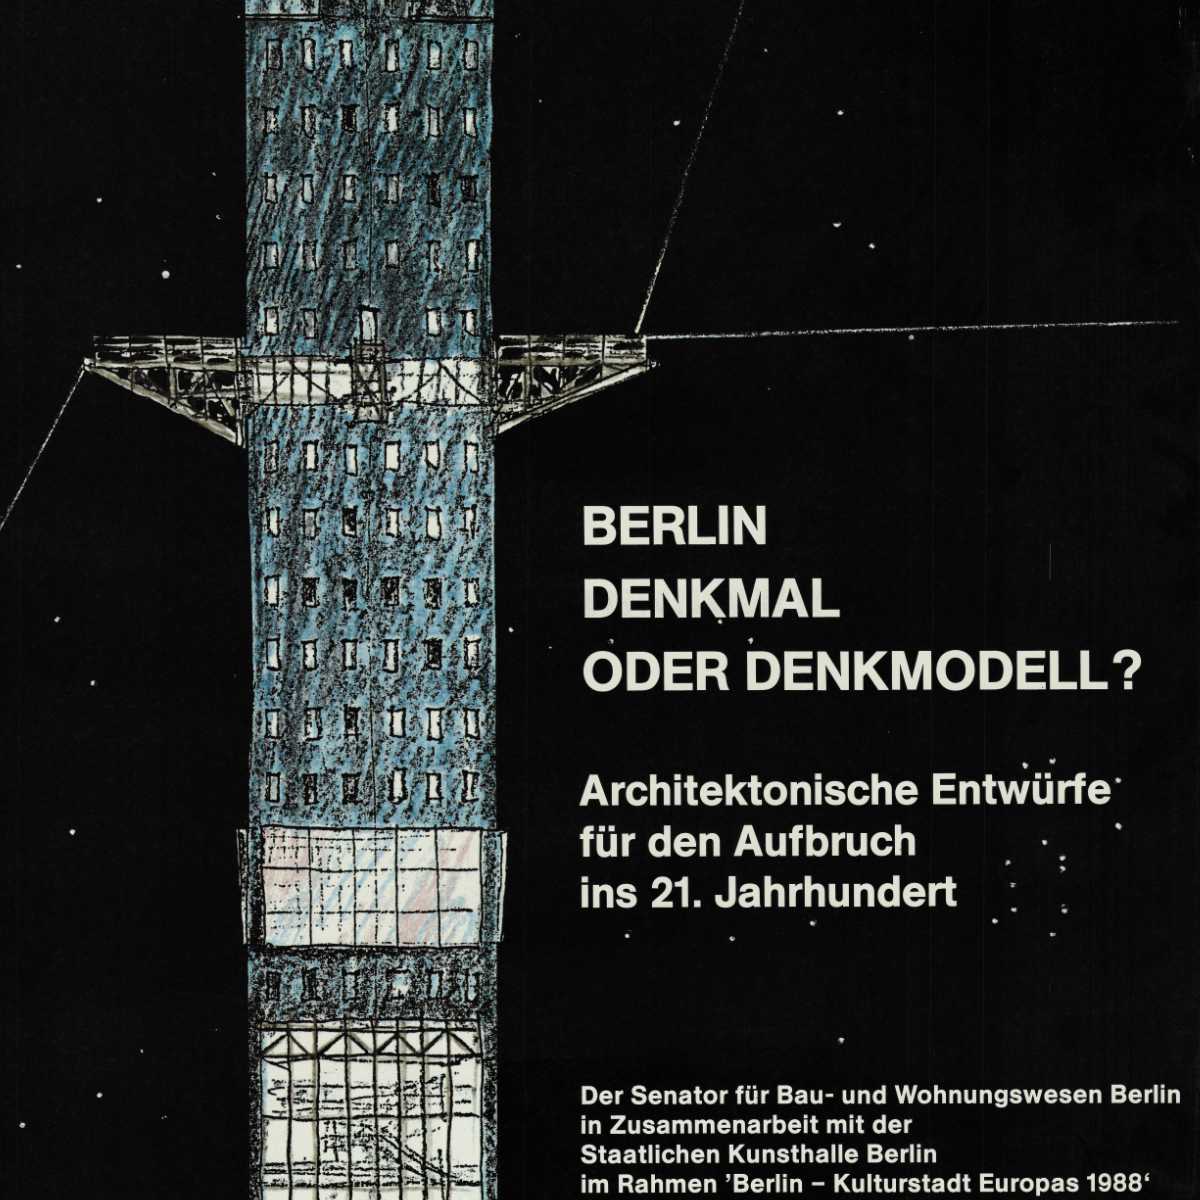 Berlin - Denkmal oder Denkmodell - Architektonische Entwürfe für den Aufbruch ins 21.Jahrhundert